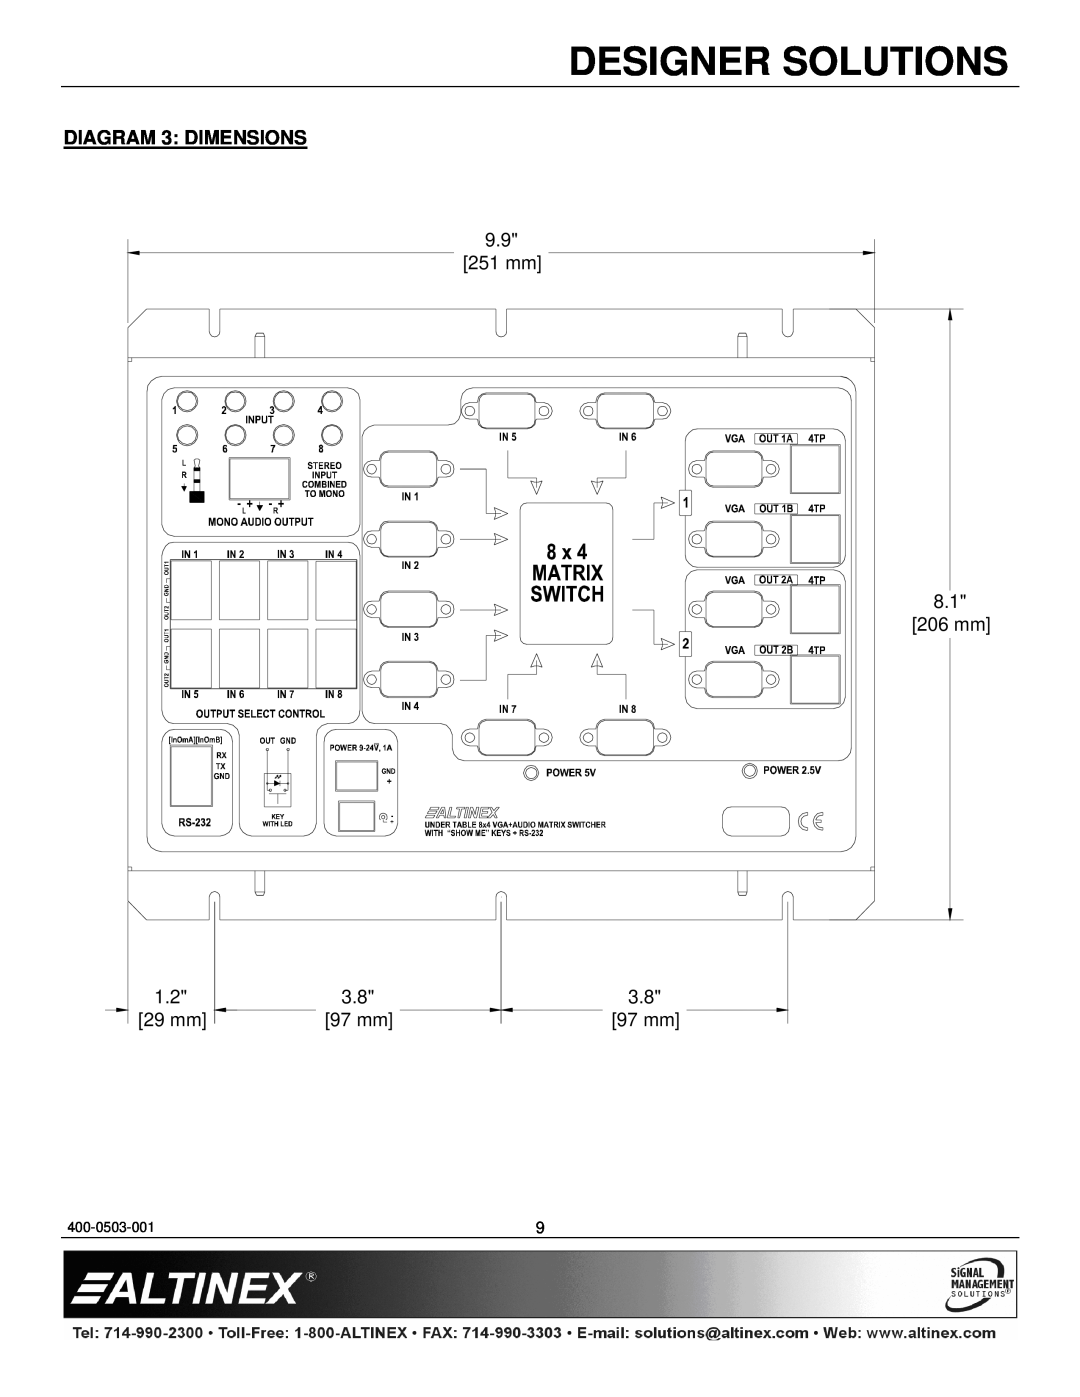 Altinex UT250-101 manual DIAGRAM 3 DIMENSIONS, Designer Solutions, 400-0503-001 